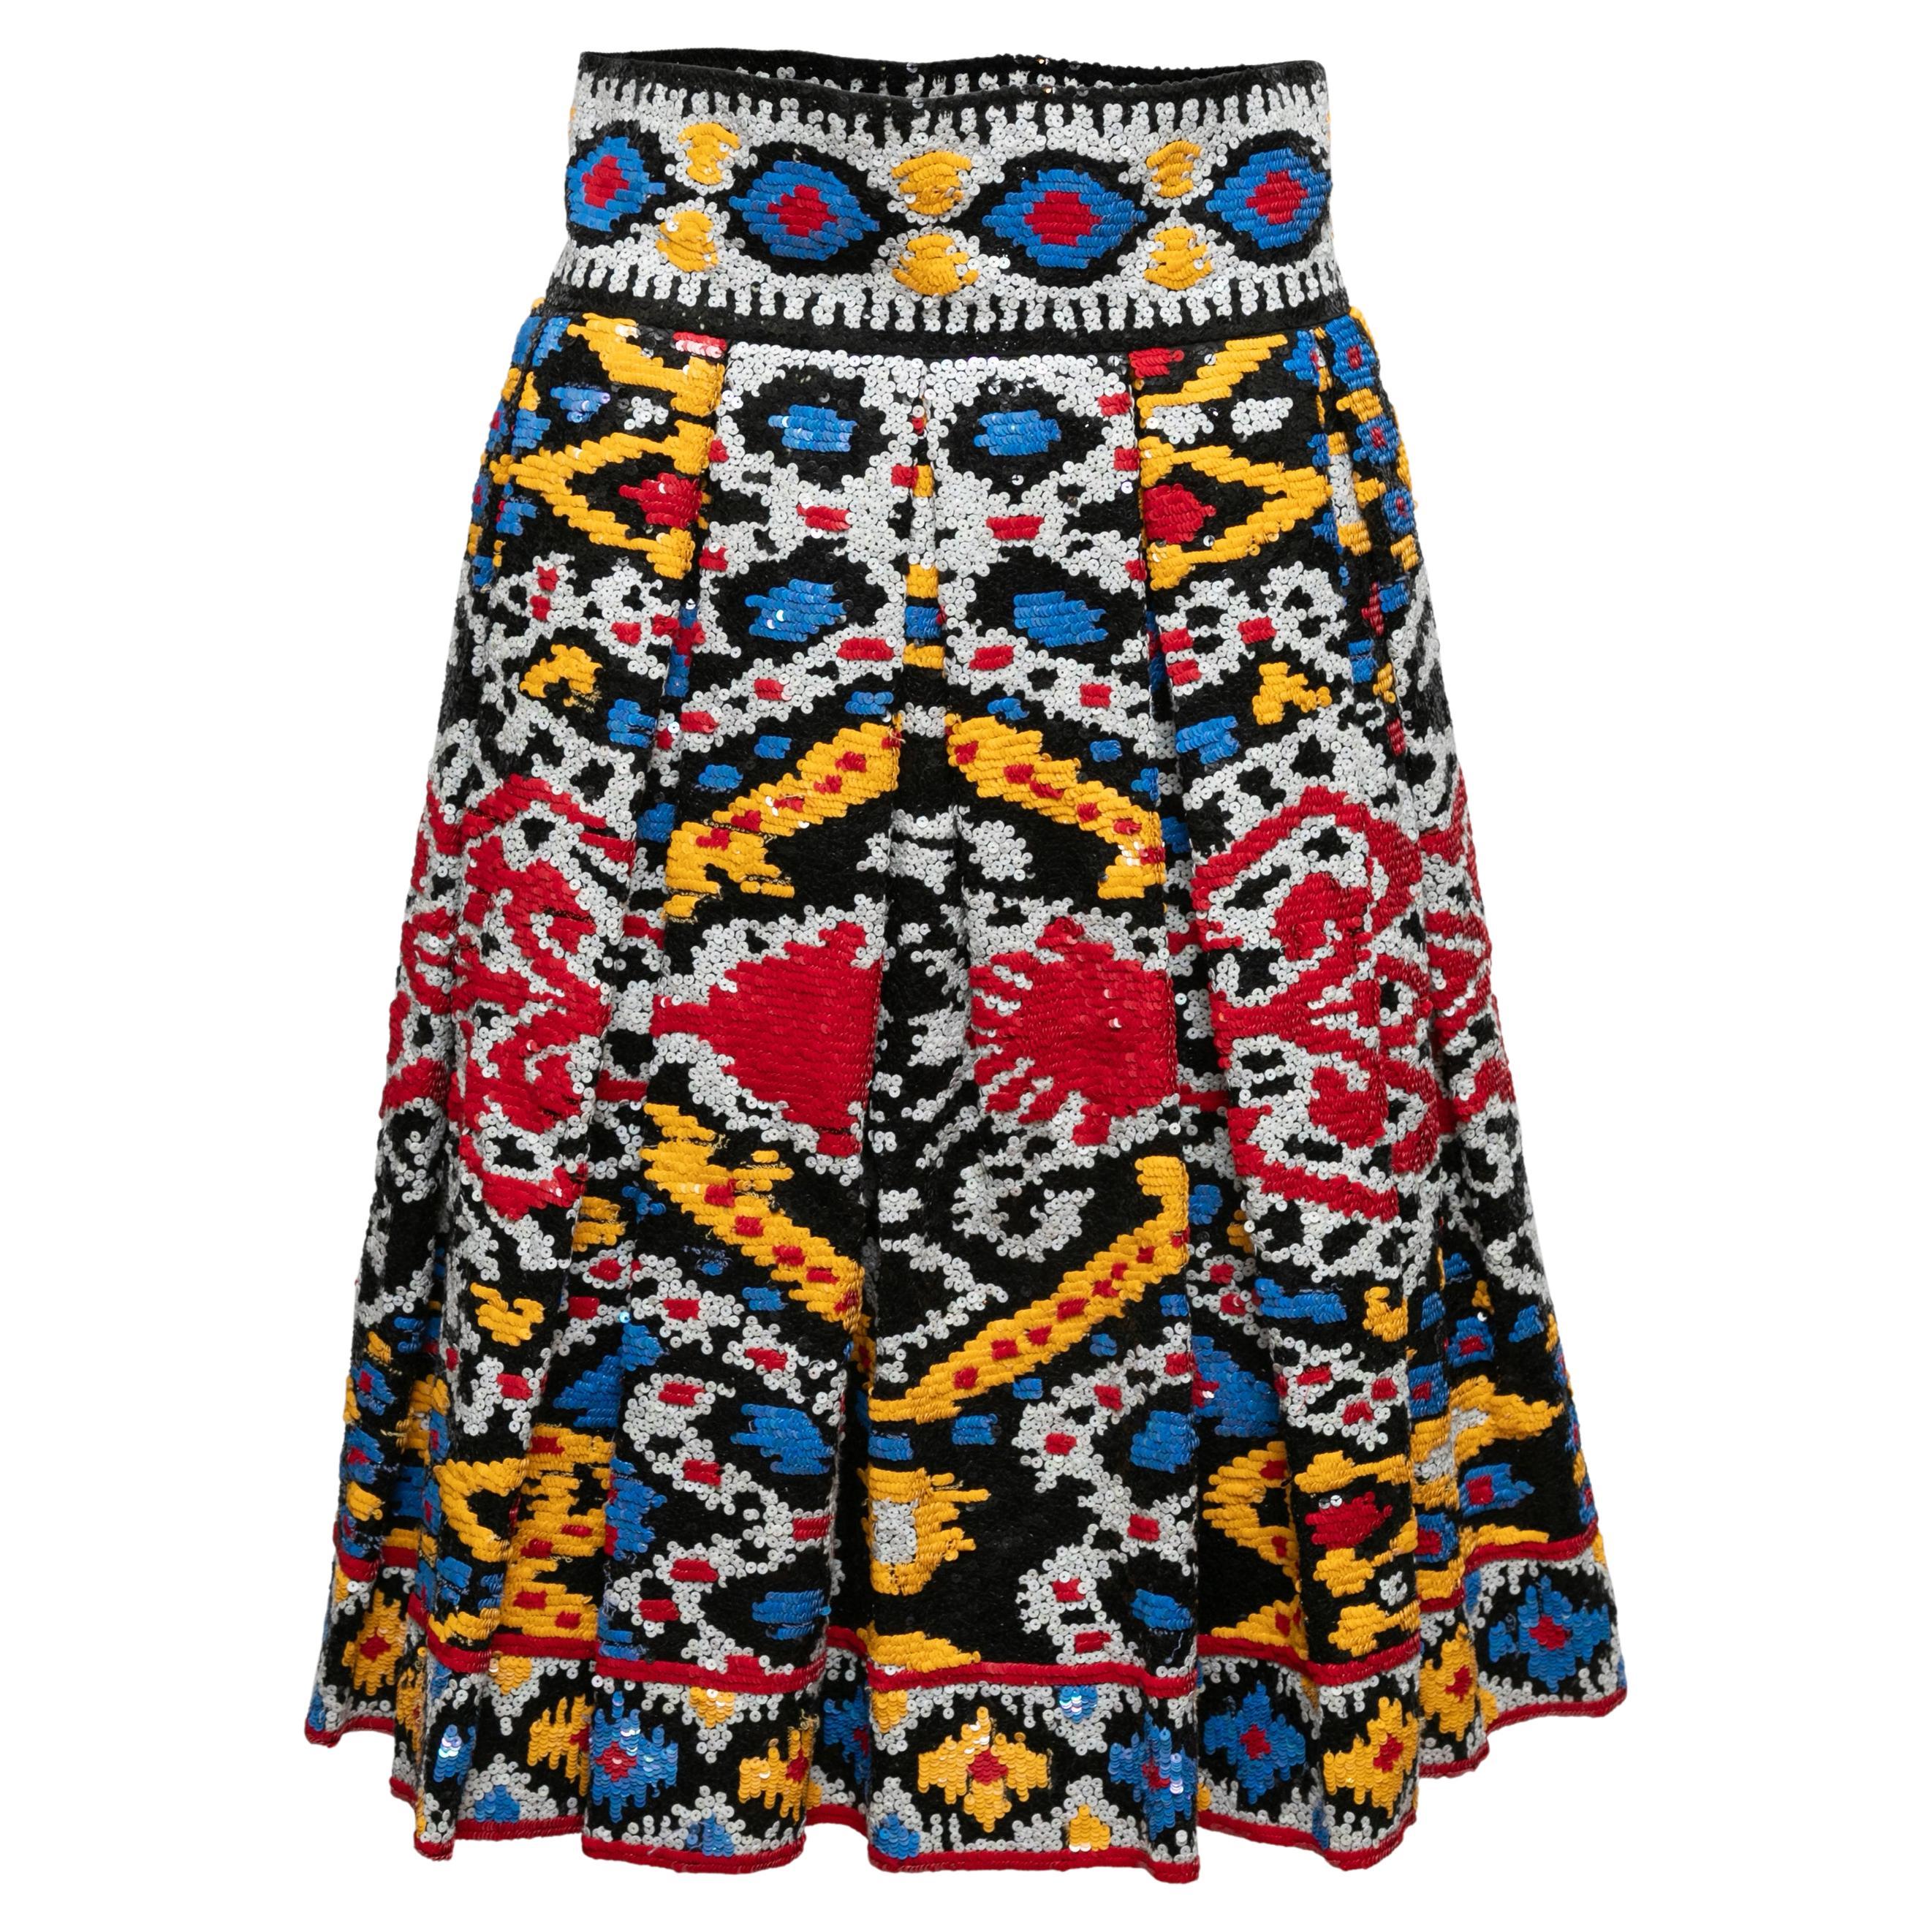 Multicolor Naeem Khan Silk Sequin-Embellished Skirt Size US S/M